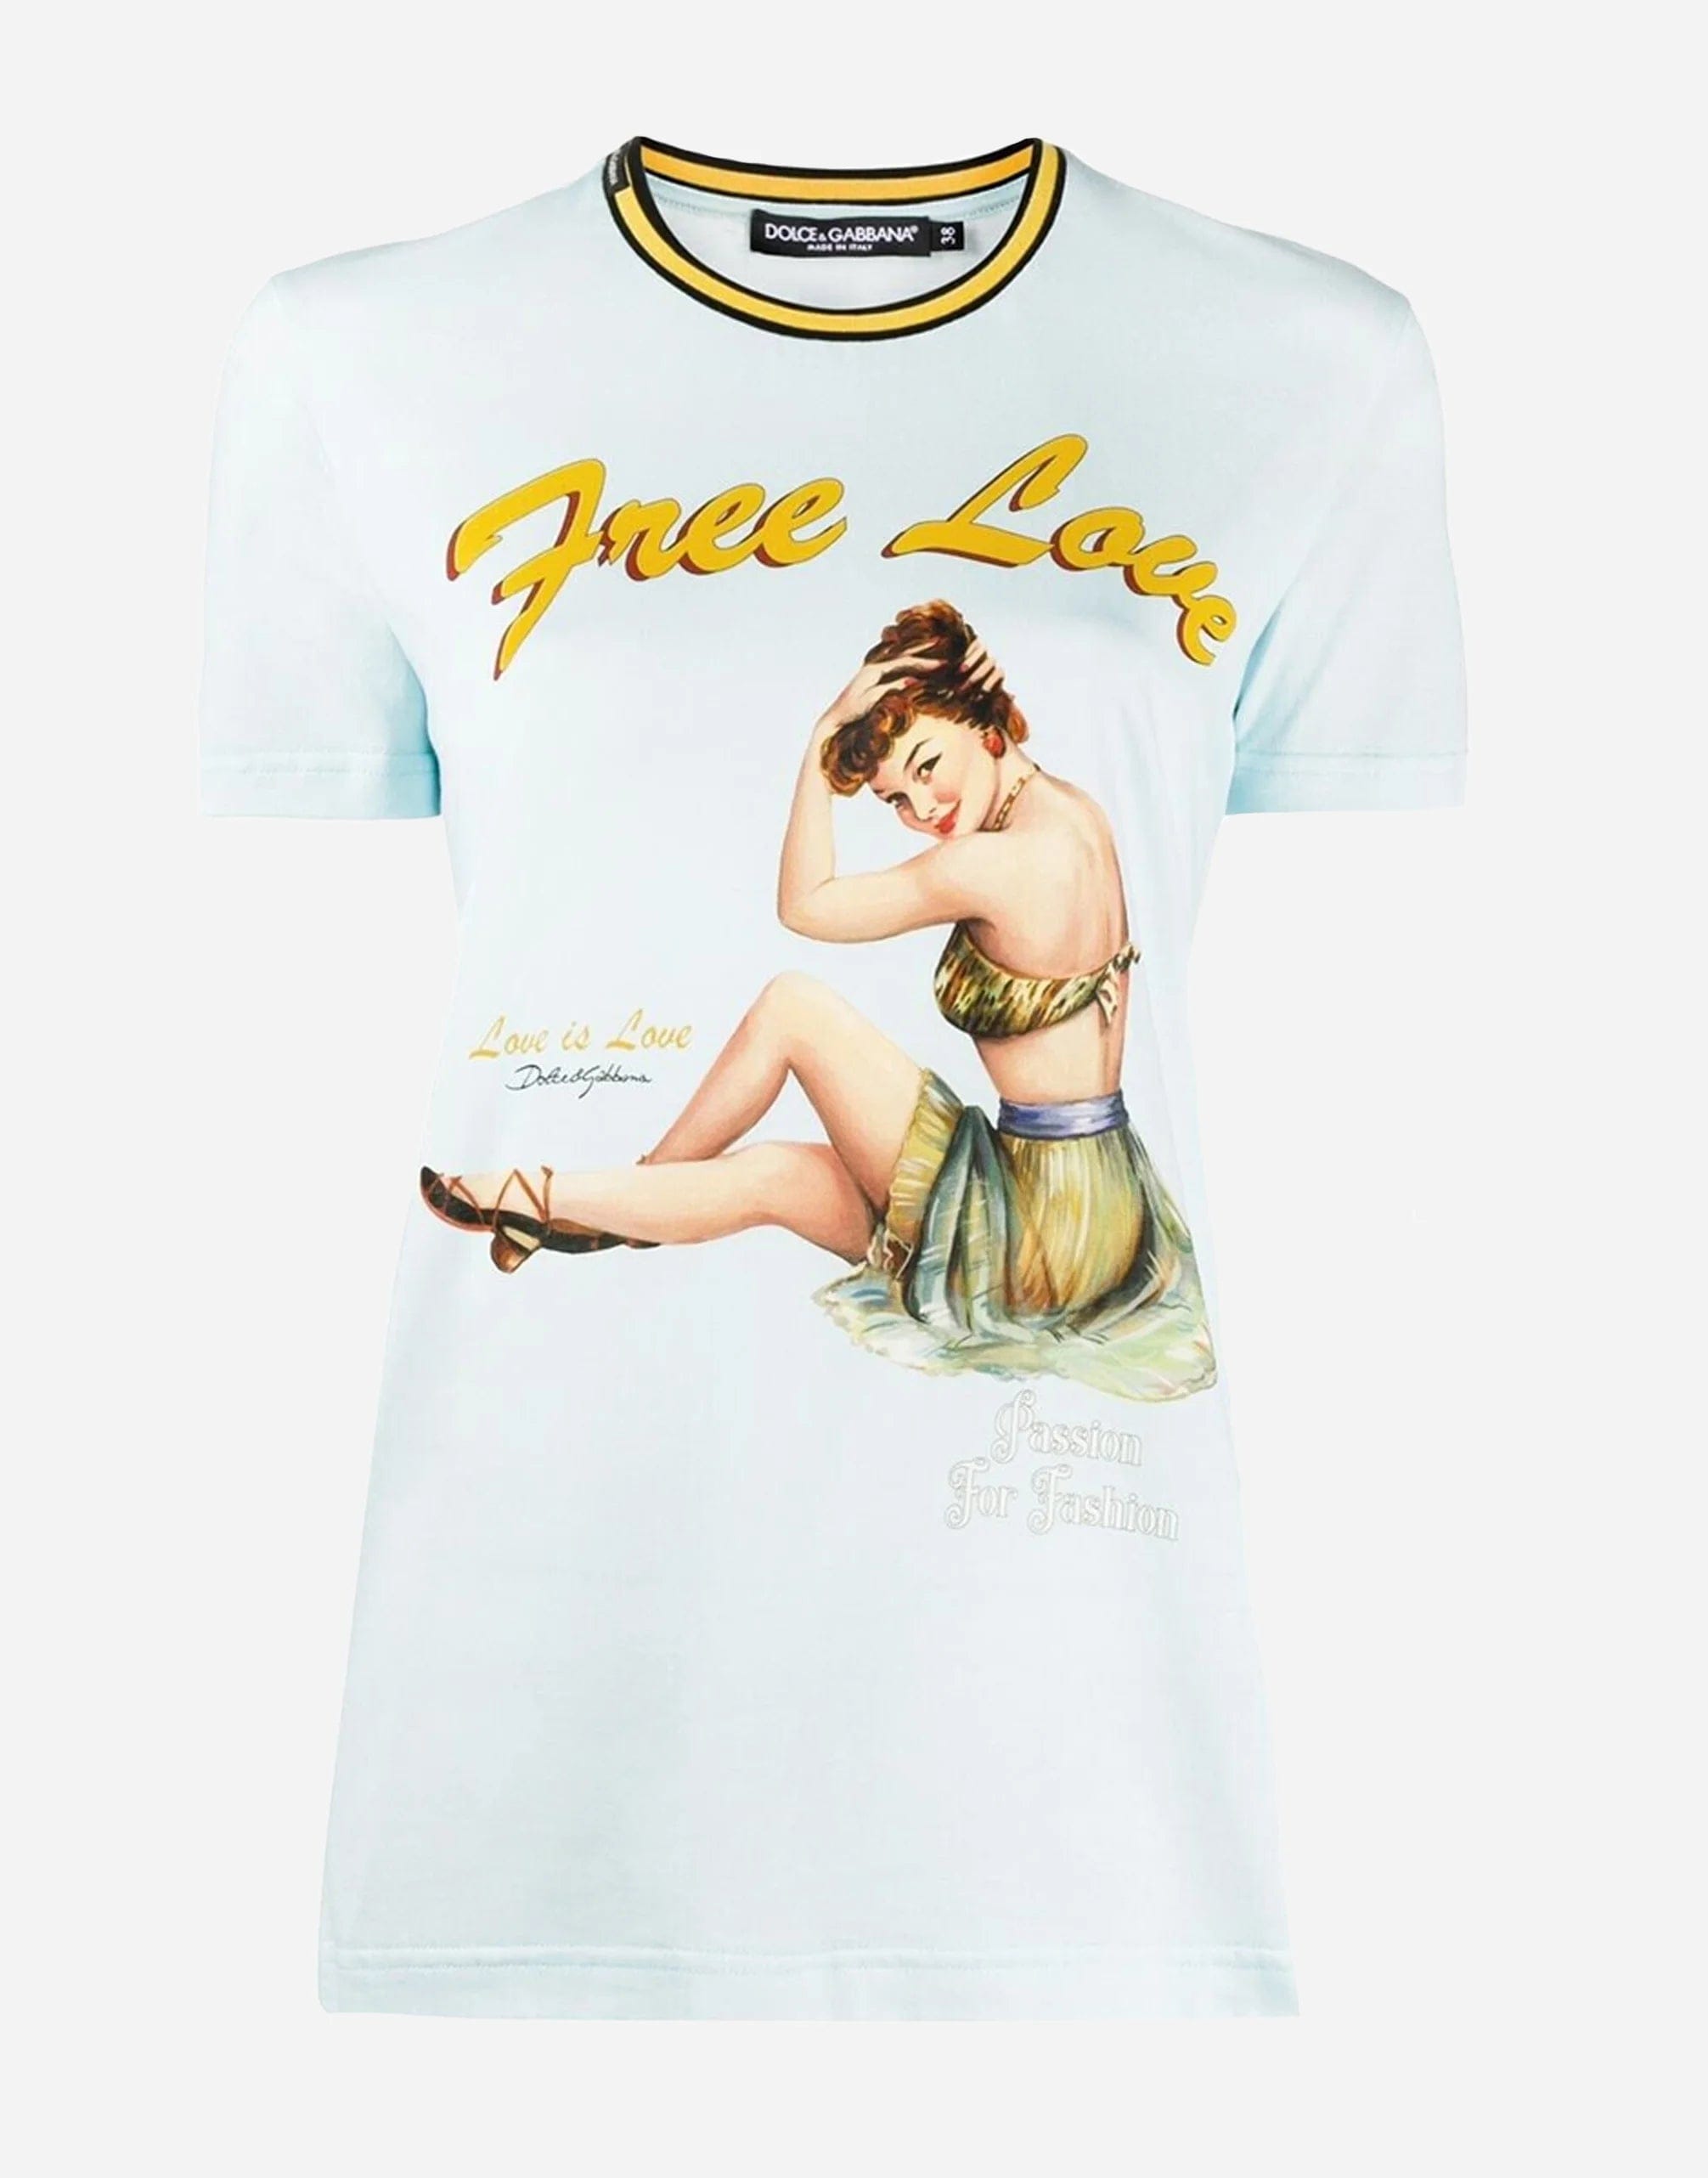 Dolce & Gabbana Free Love Crewneck T-shirt